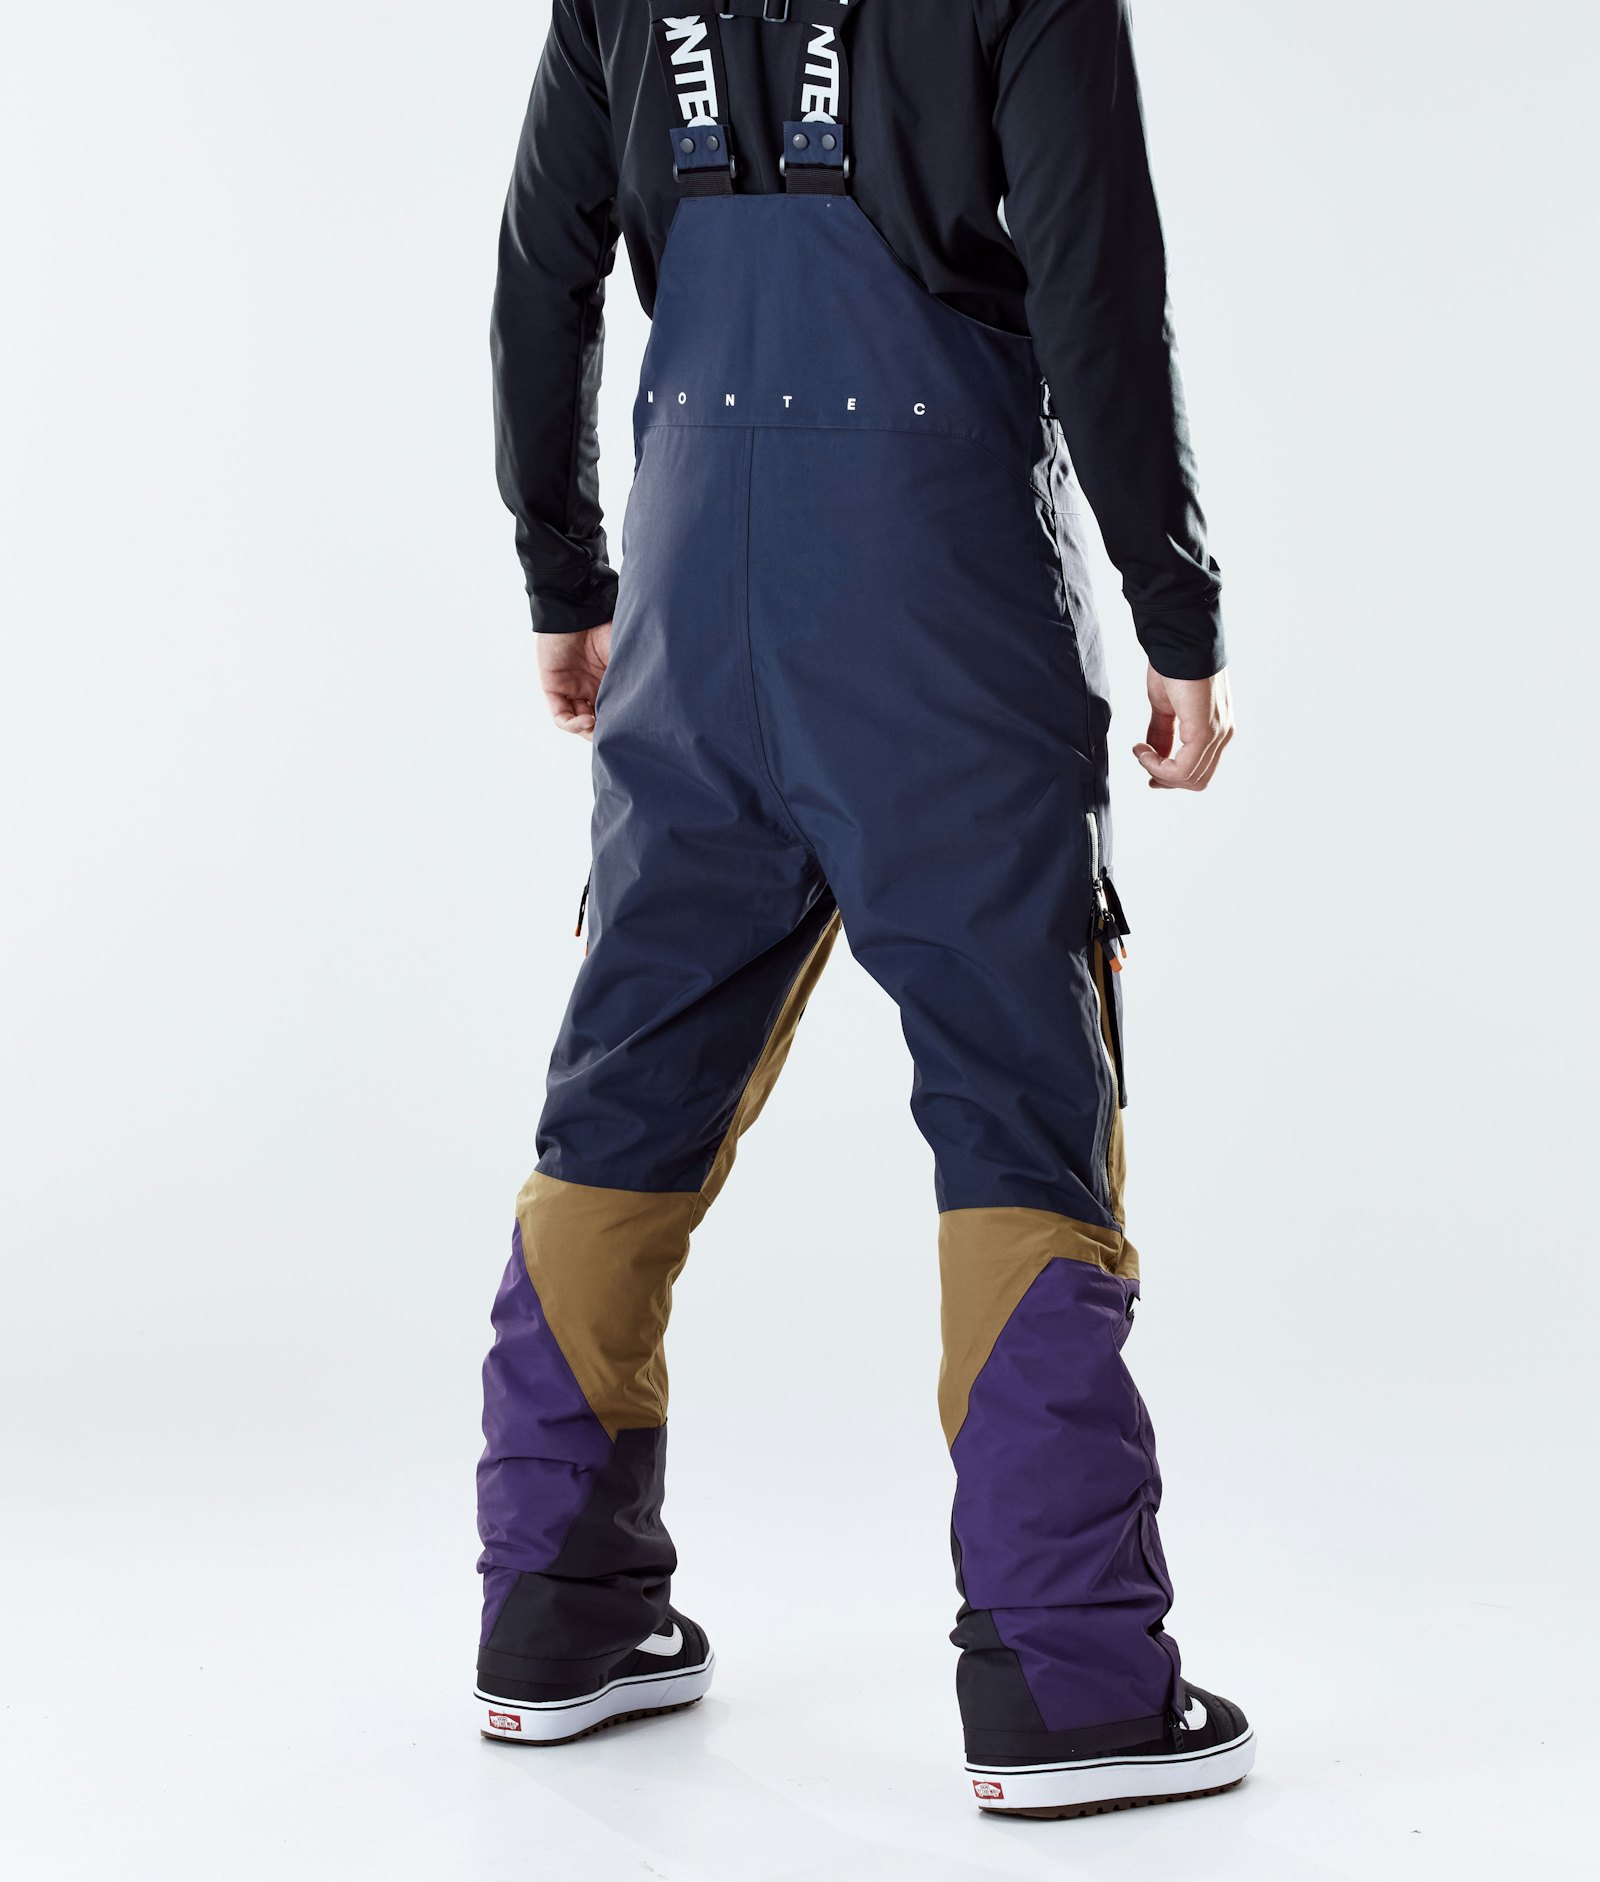 Montec Fawk 2020 Snowboard Broek Heren Marine/Gold/Purple